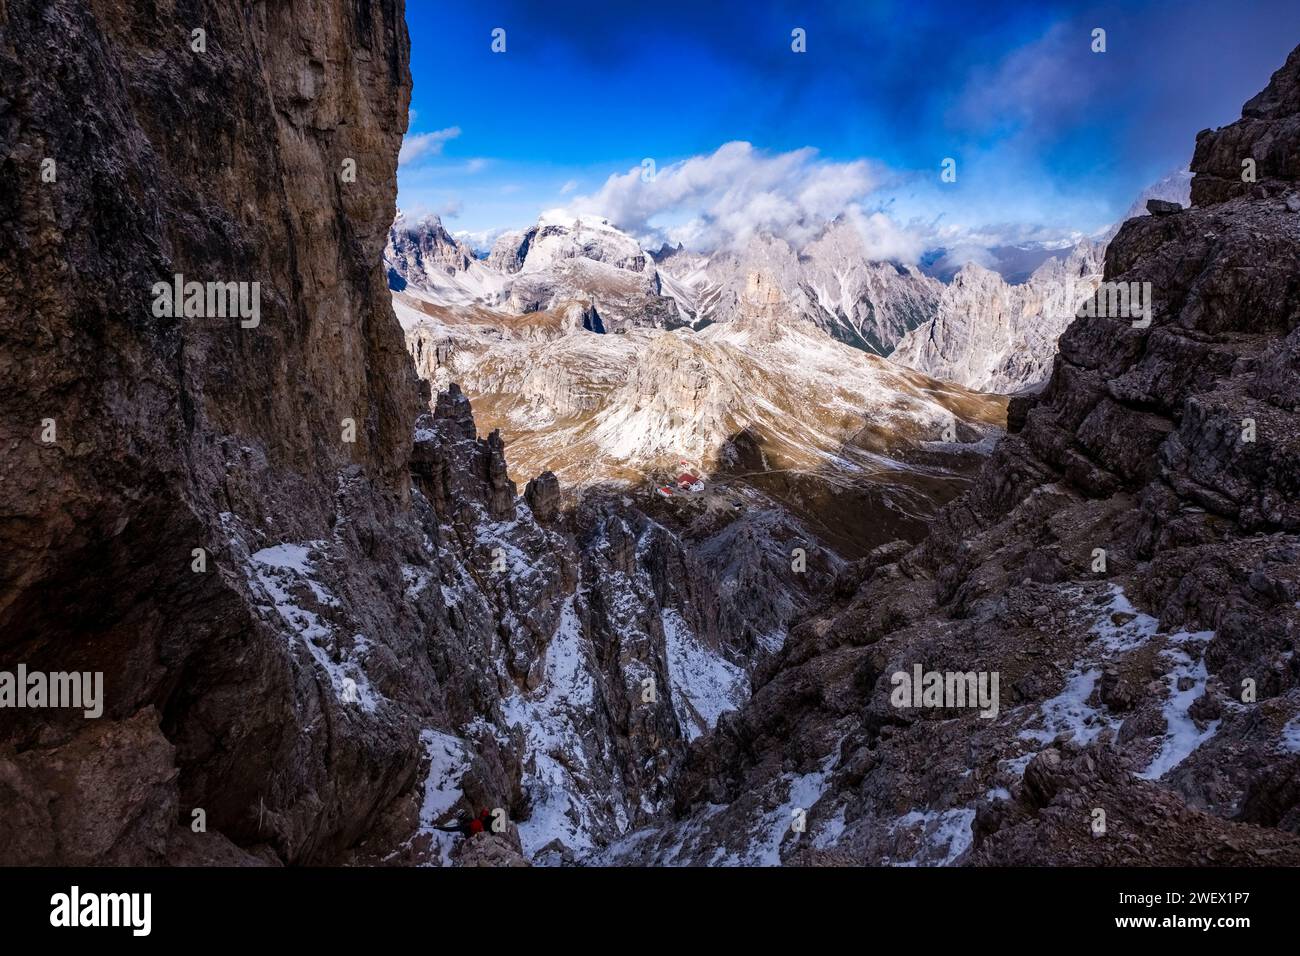 Aus der Vogelperspektive auf die Berghütte Rifugio Locatelli und die Bergrücken und Gipfel des Nationalparks Tre Cime, vom Monte Paterno aus gesehen. Stockfoto